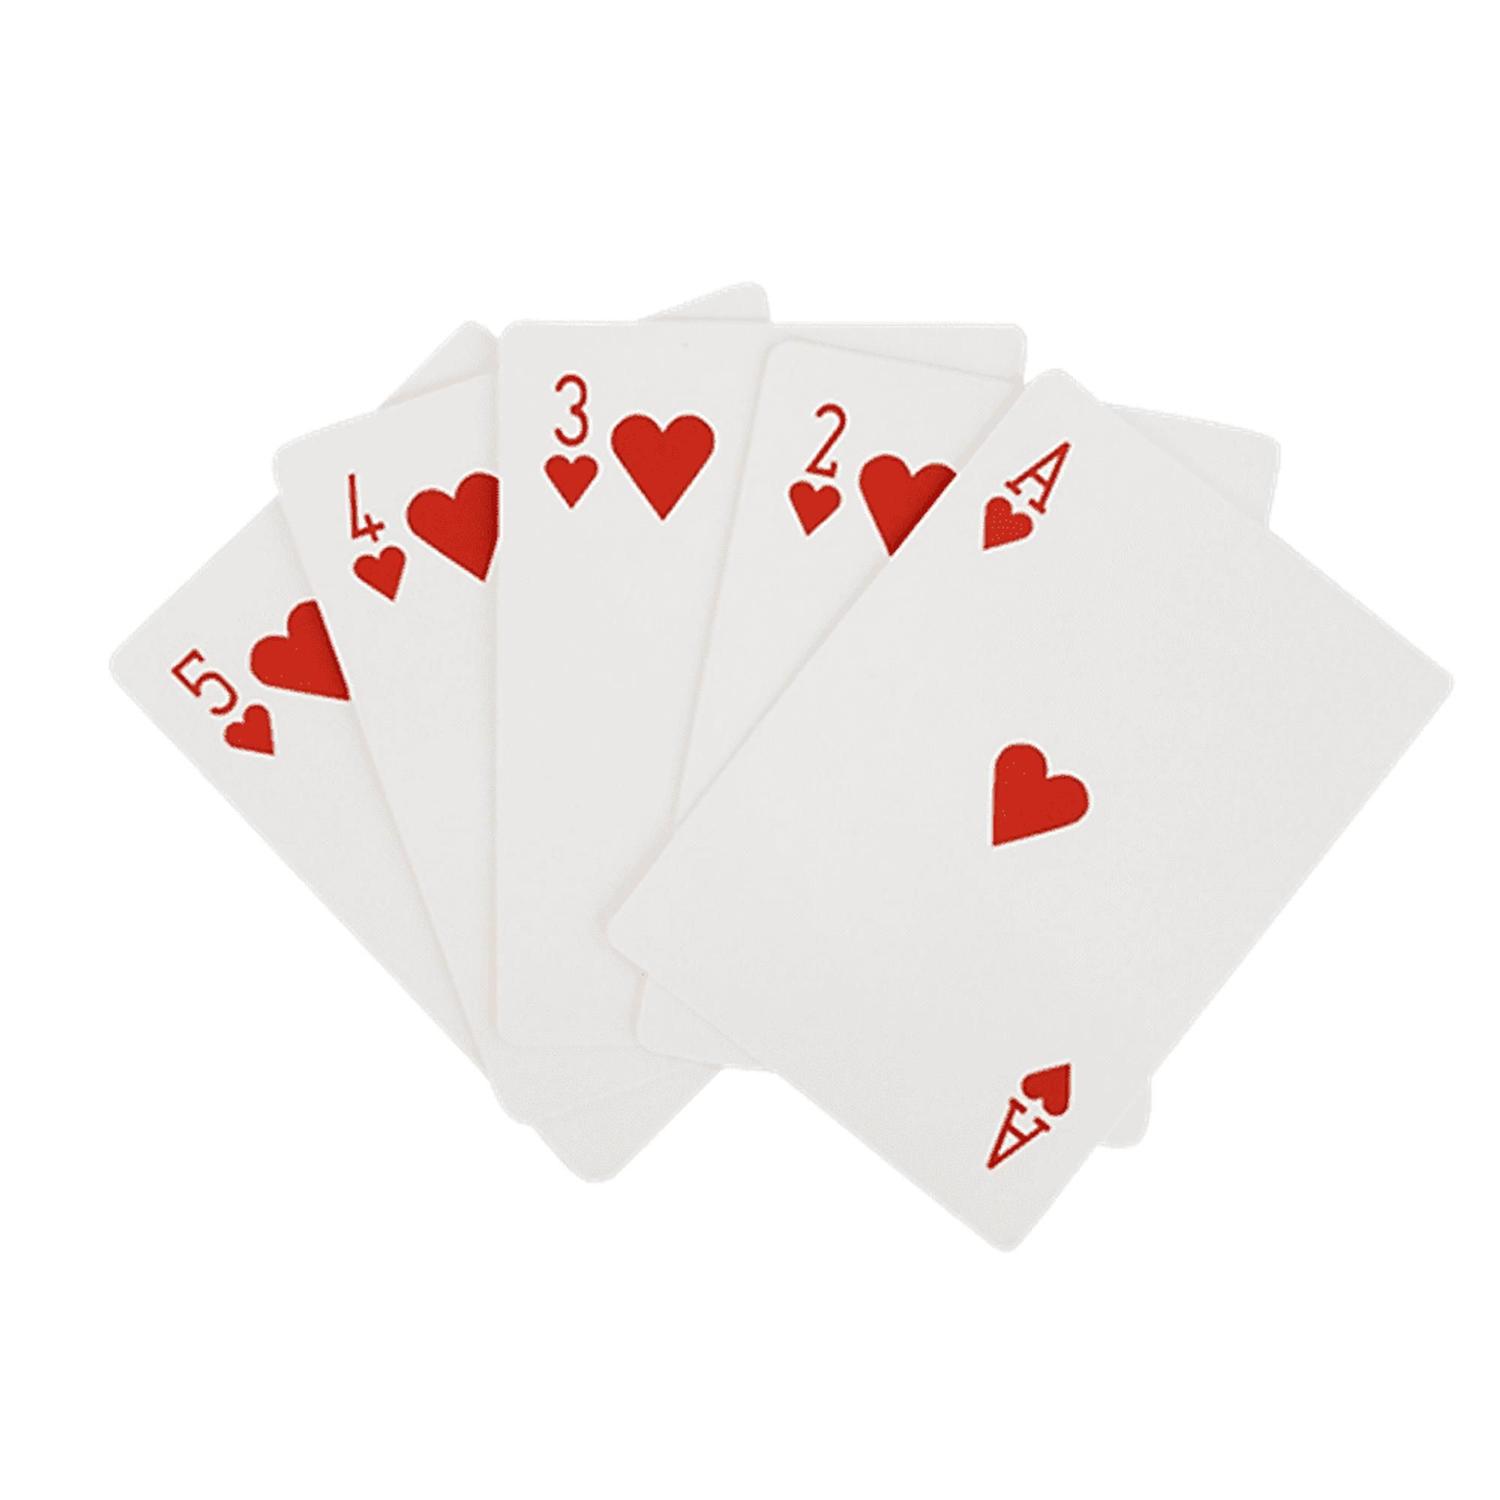 Jogo de Cartas - Baralho com 3 Dados